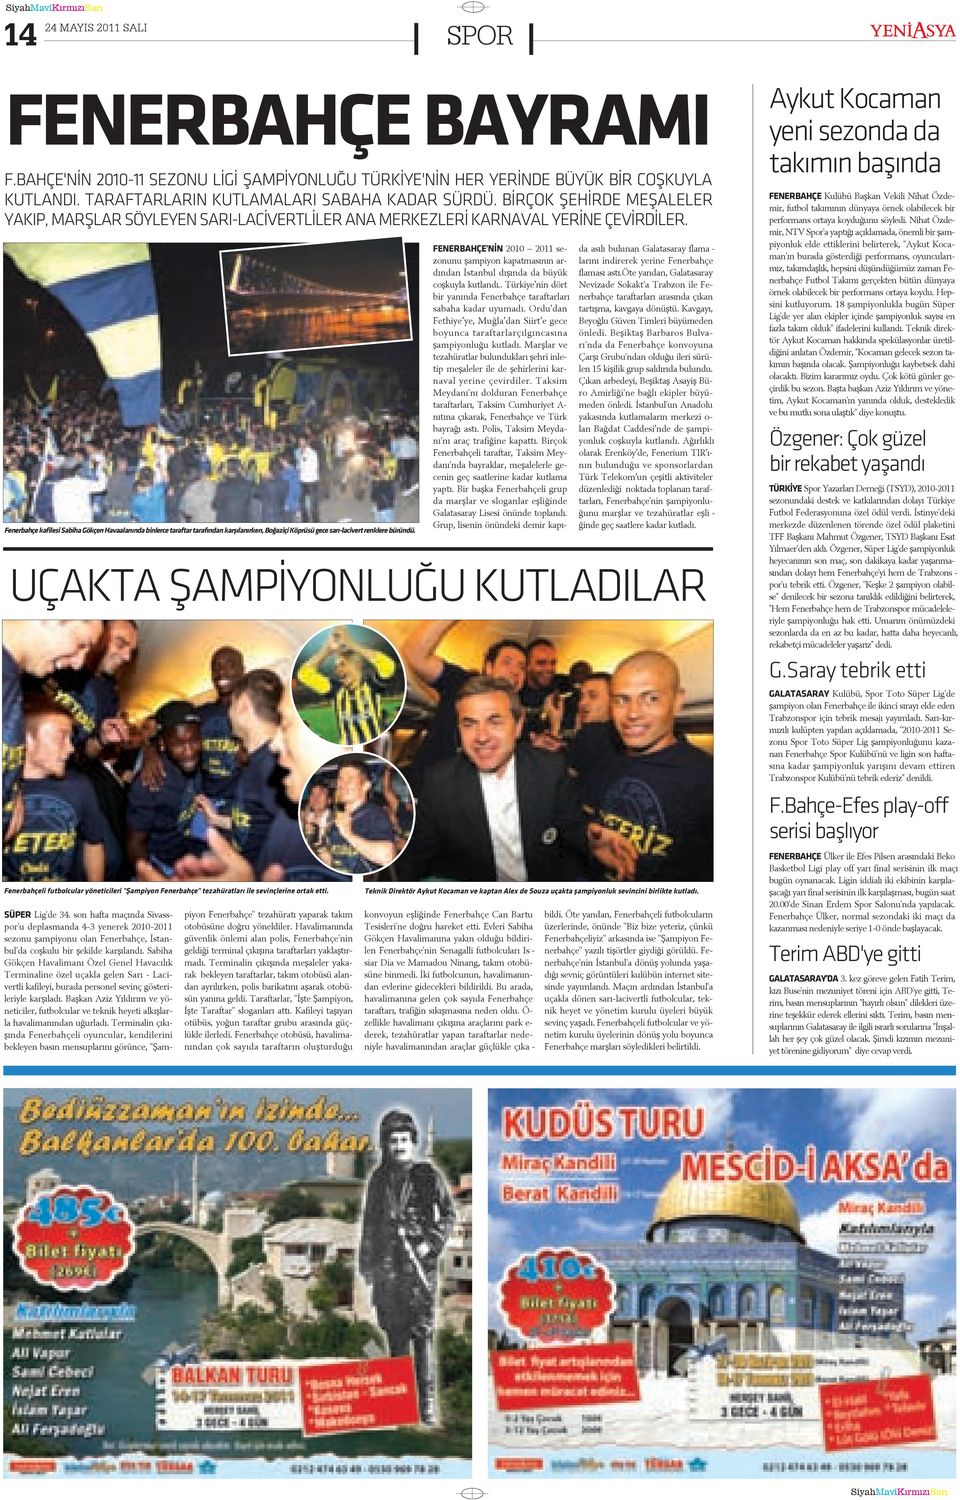 Fenerbahçe kafilesi Sabiha Gökçen Havaalanýnda binlerce taraftar tarafýndan karþýlanýrken, Boðaziçi Köprüsü gece sarý-lacivert renklere büründü.